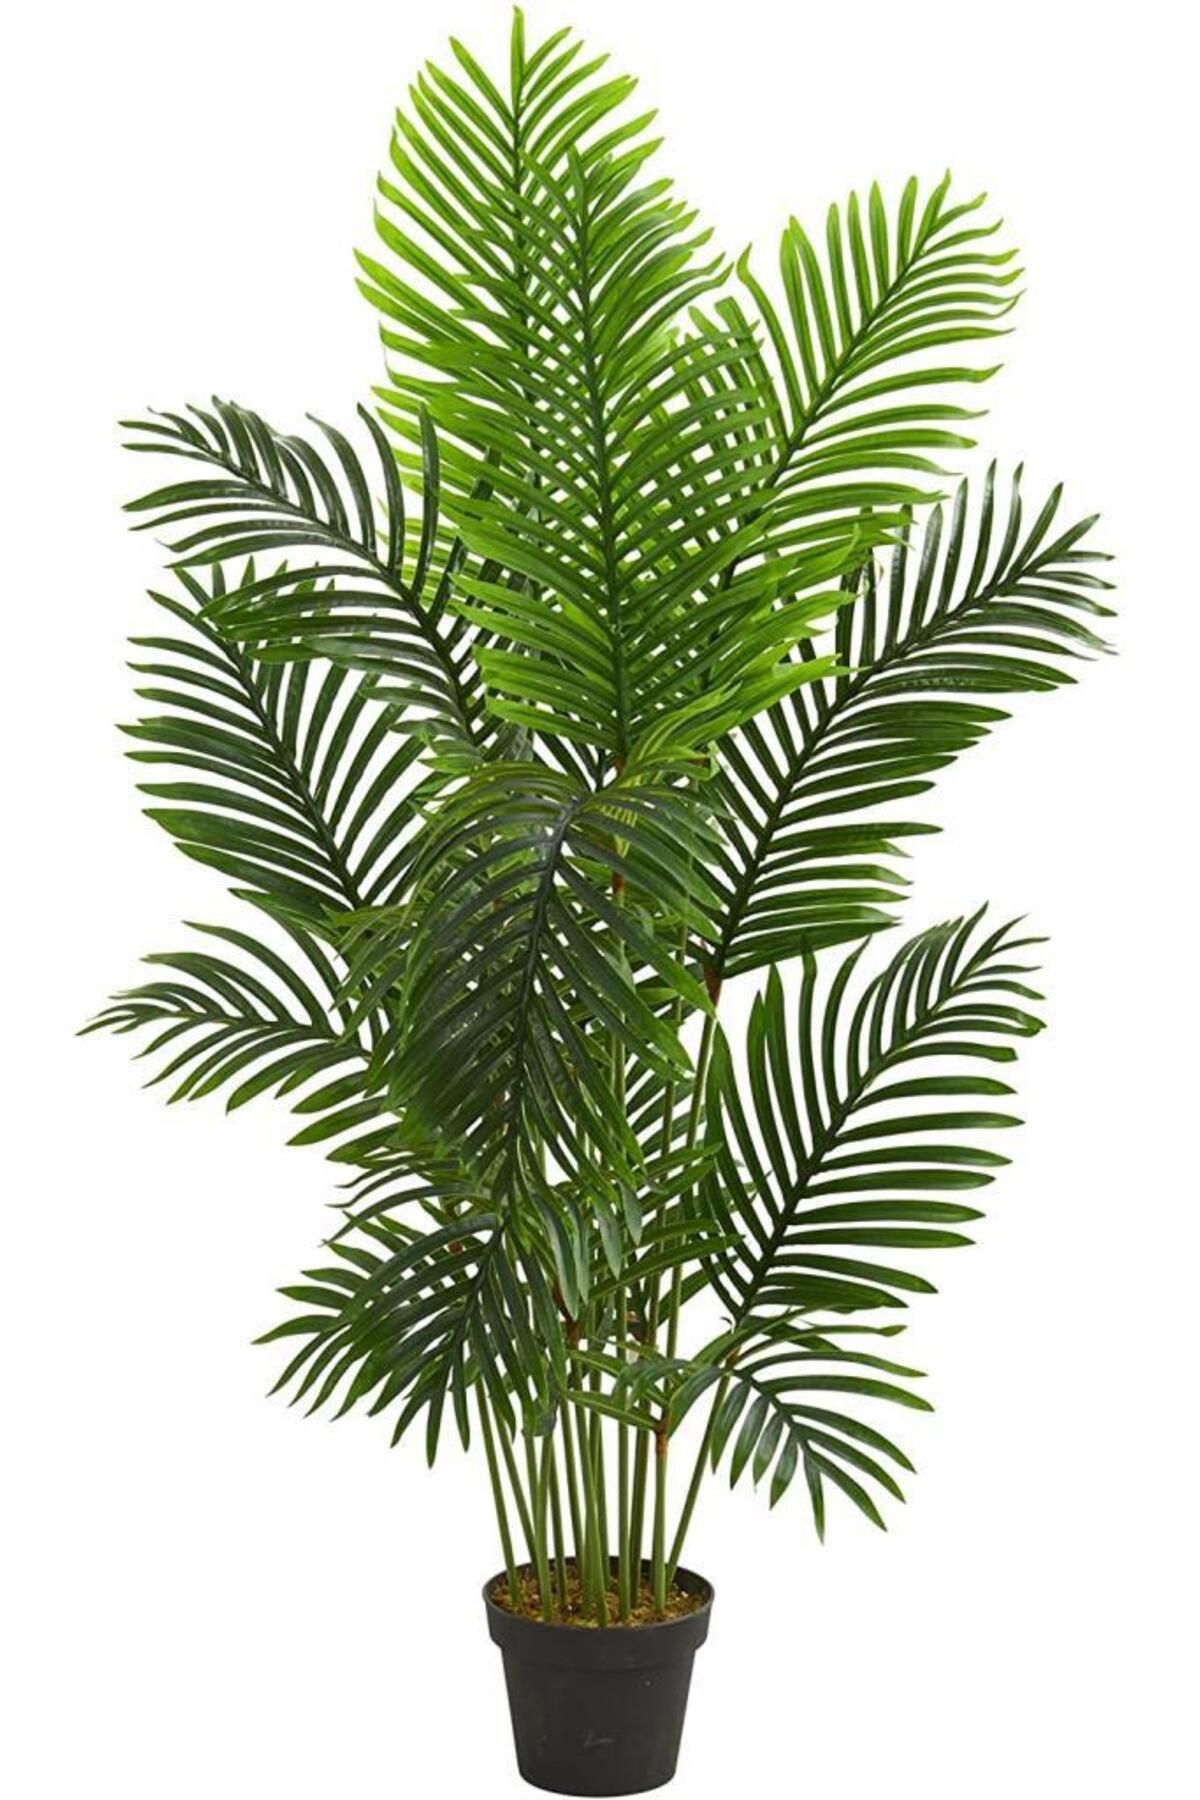 Nettenevime Yapay Ağaç Areka Ağacı Palmiye Ağacı Salon Bitkisi 140cm 11 Yaprak Siyah Saksılı